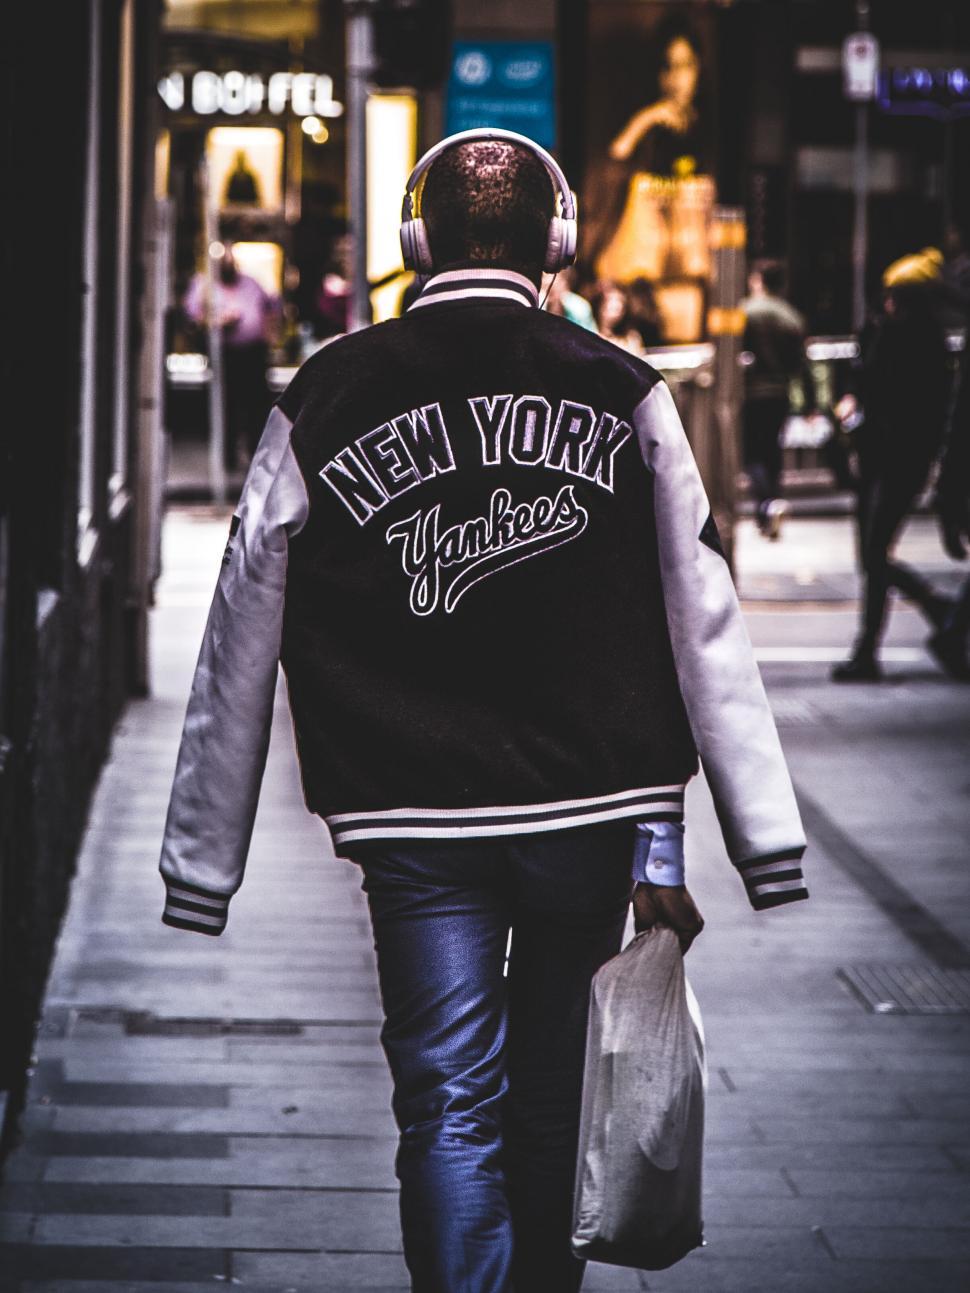 Free Image of Man in New York Yankees jacket walking 